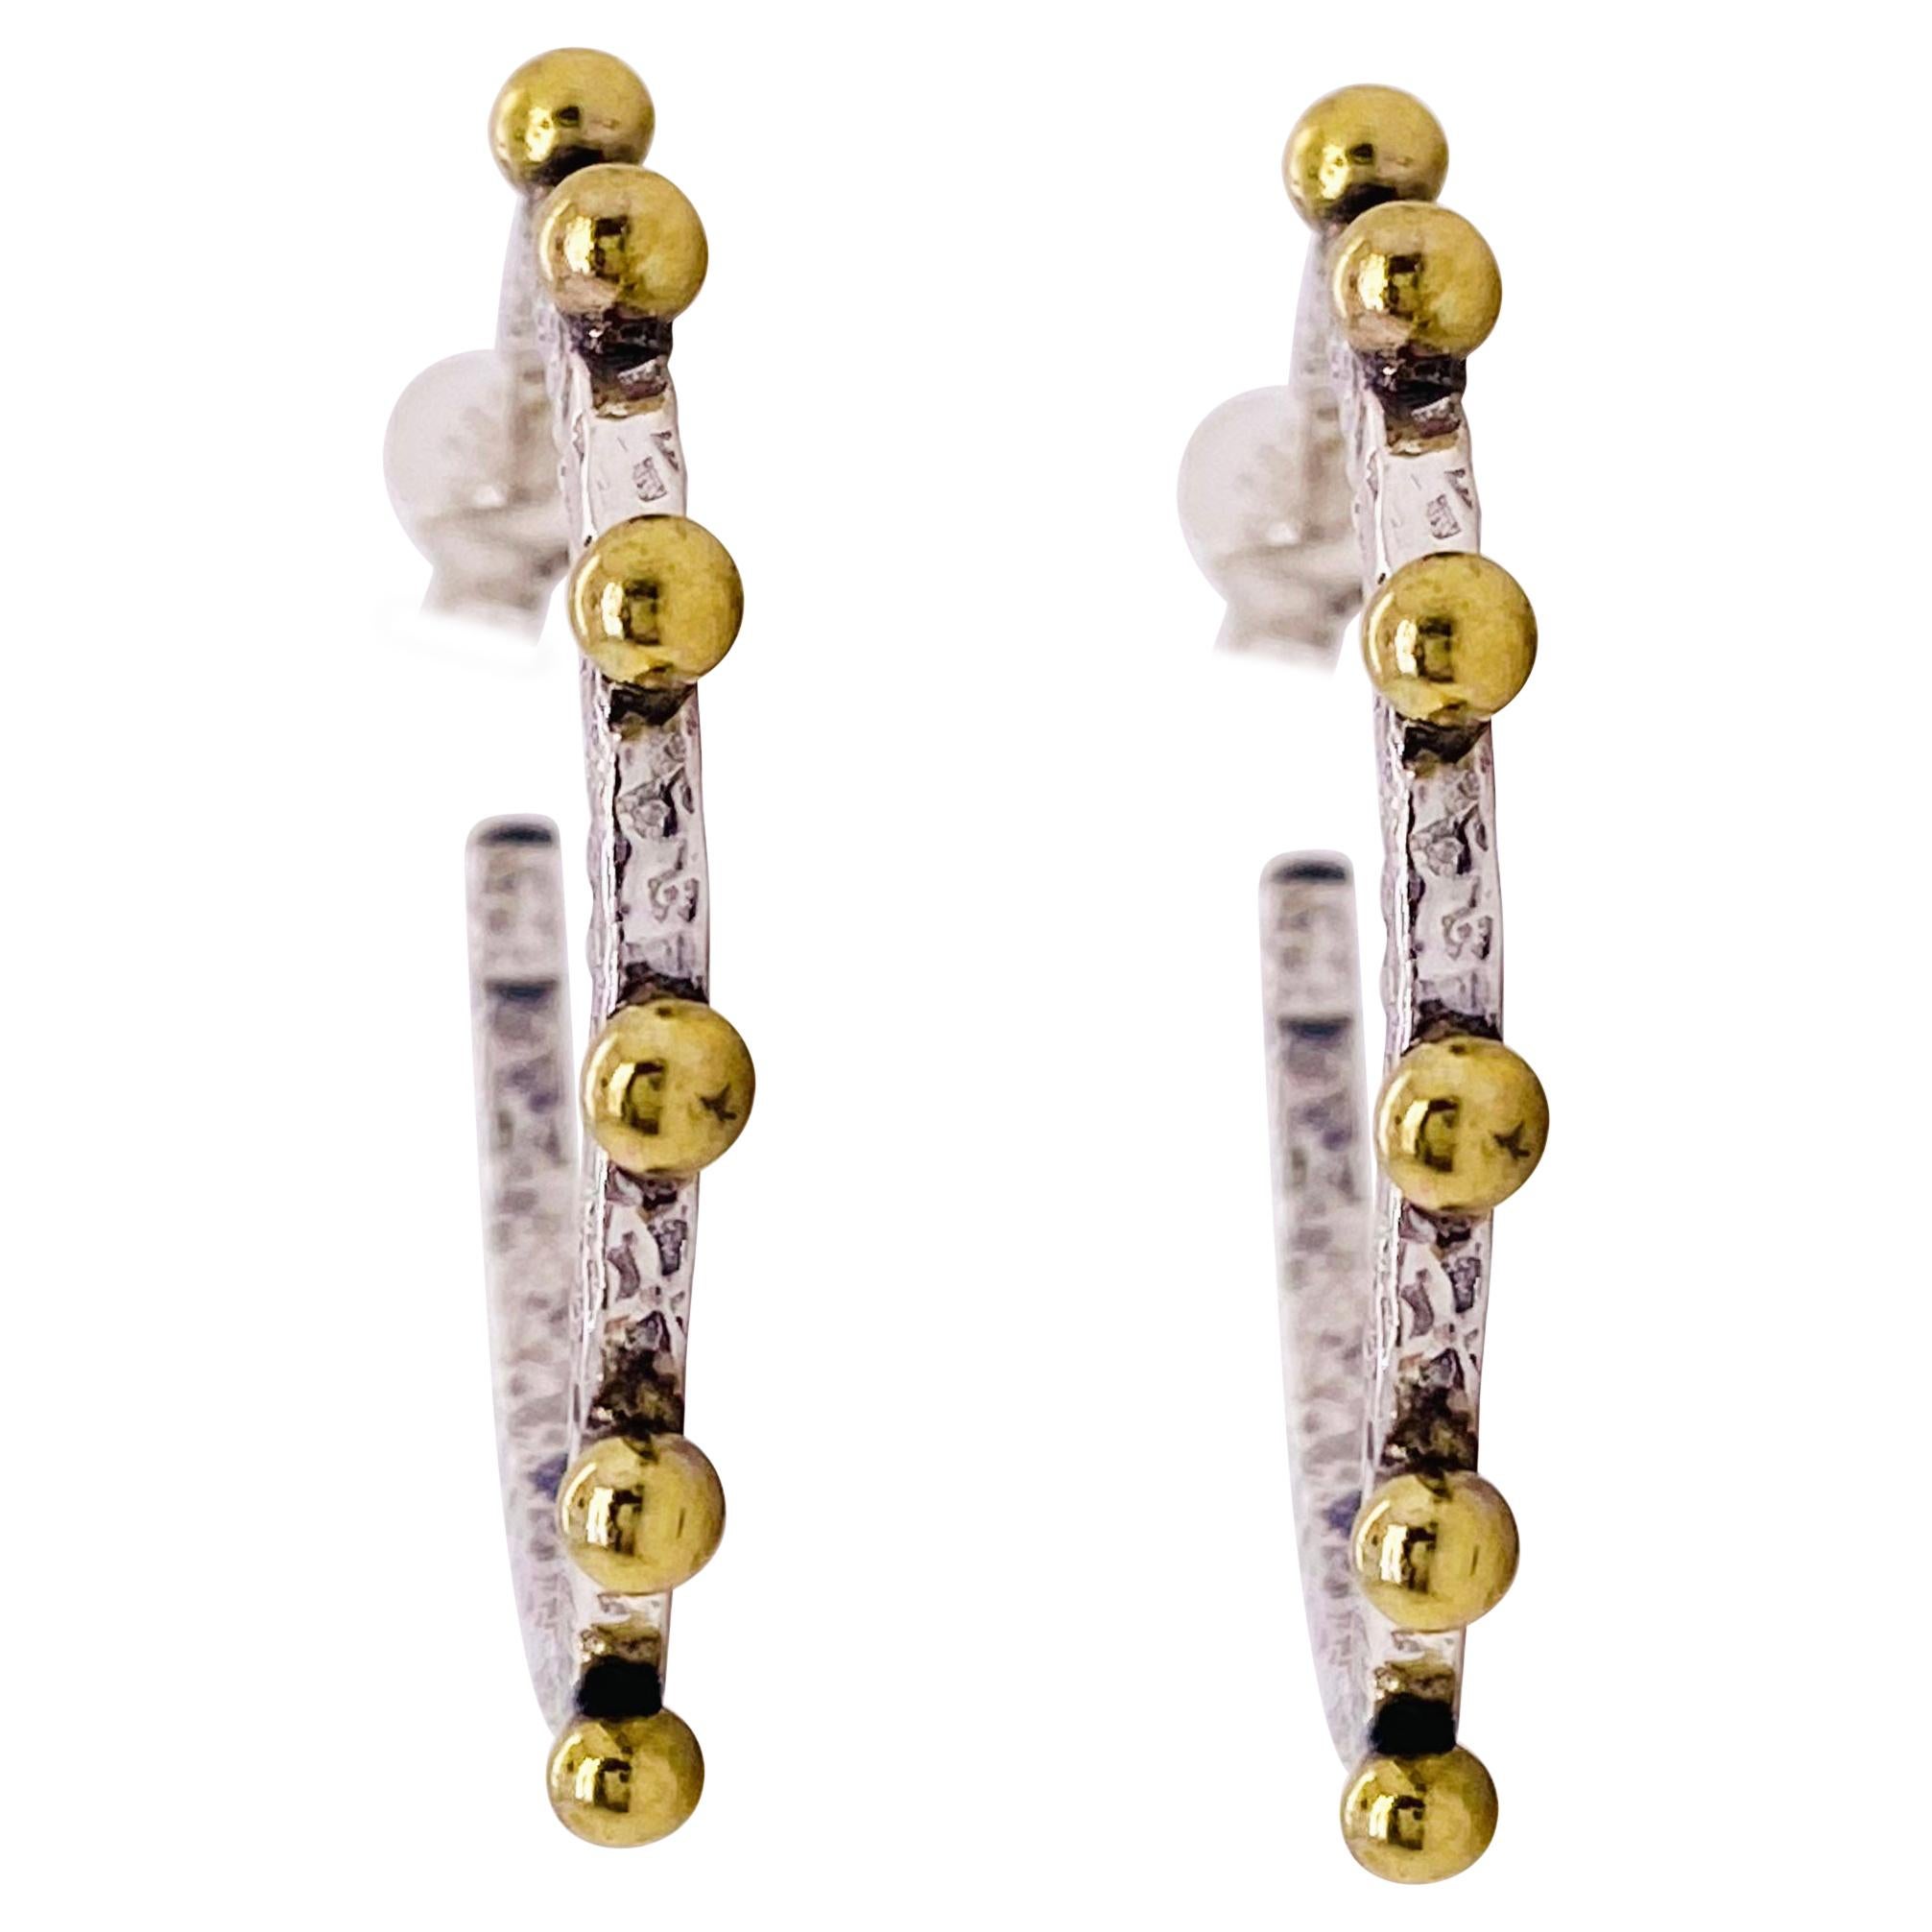 Mixed Metal Hoop Earrings, One Inch Diameter Sterling Earrings w Embelliments